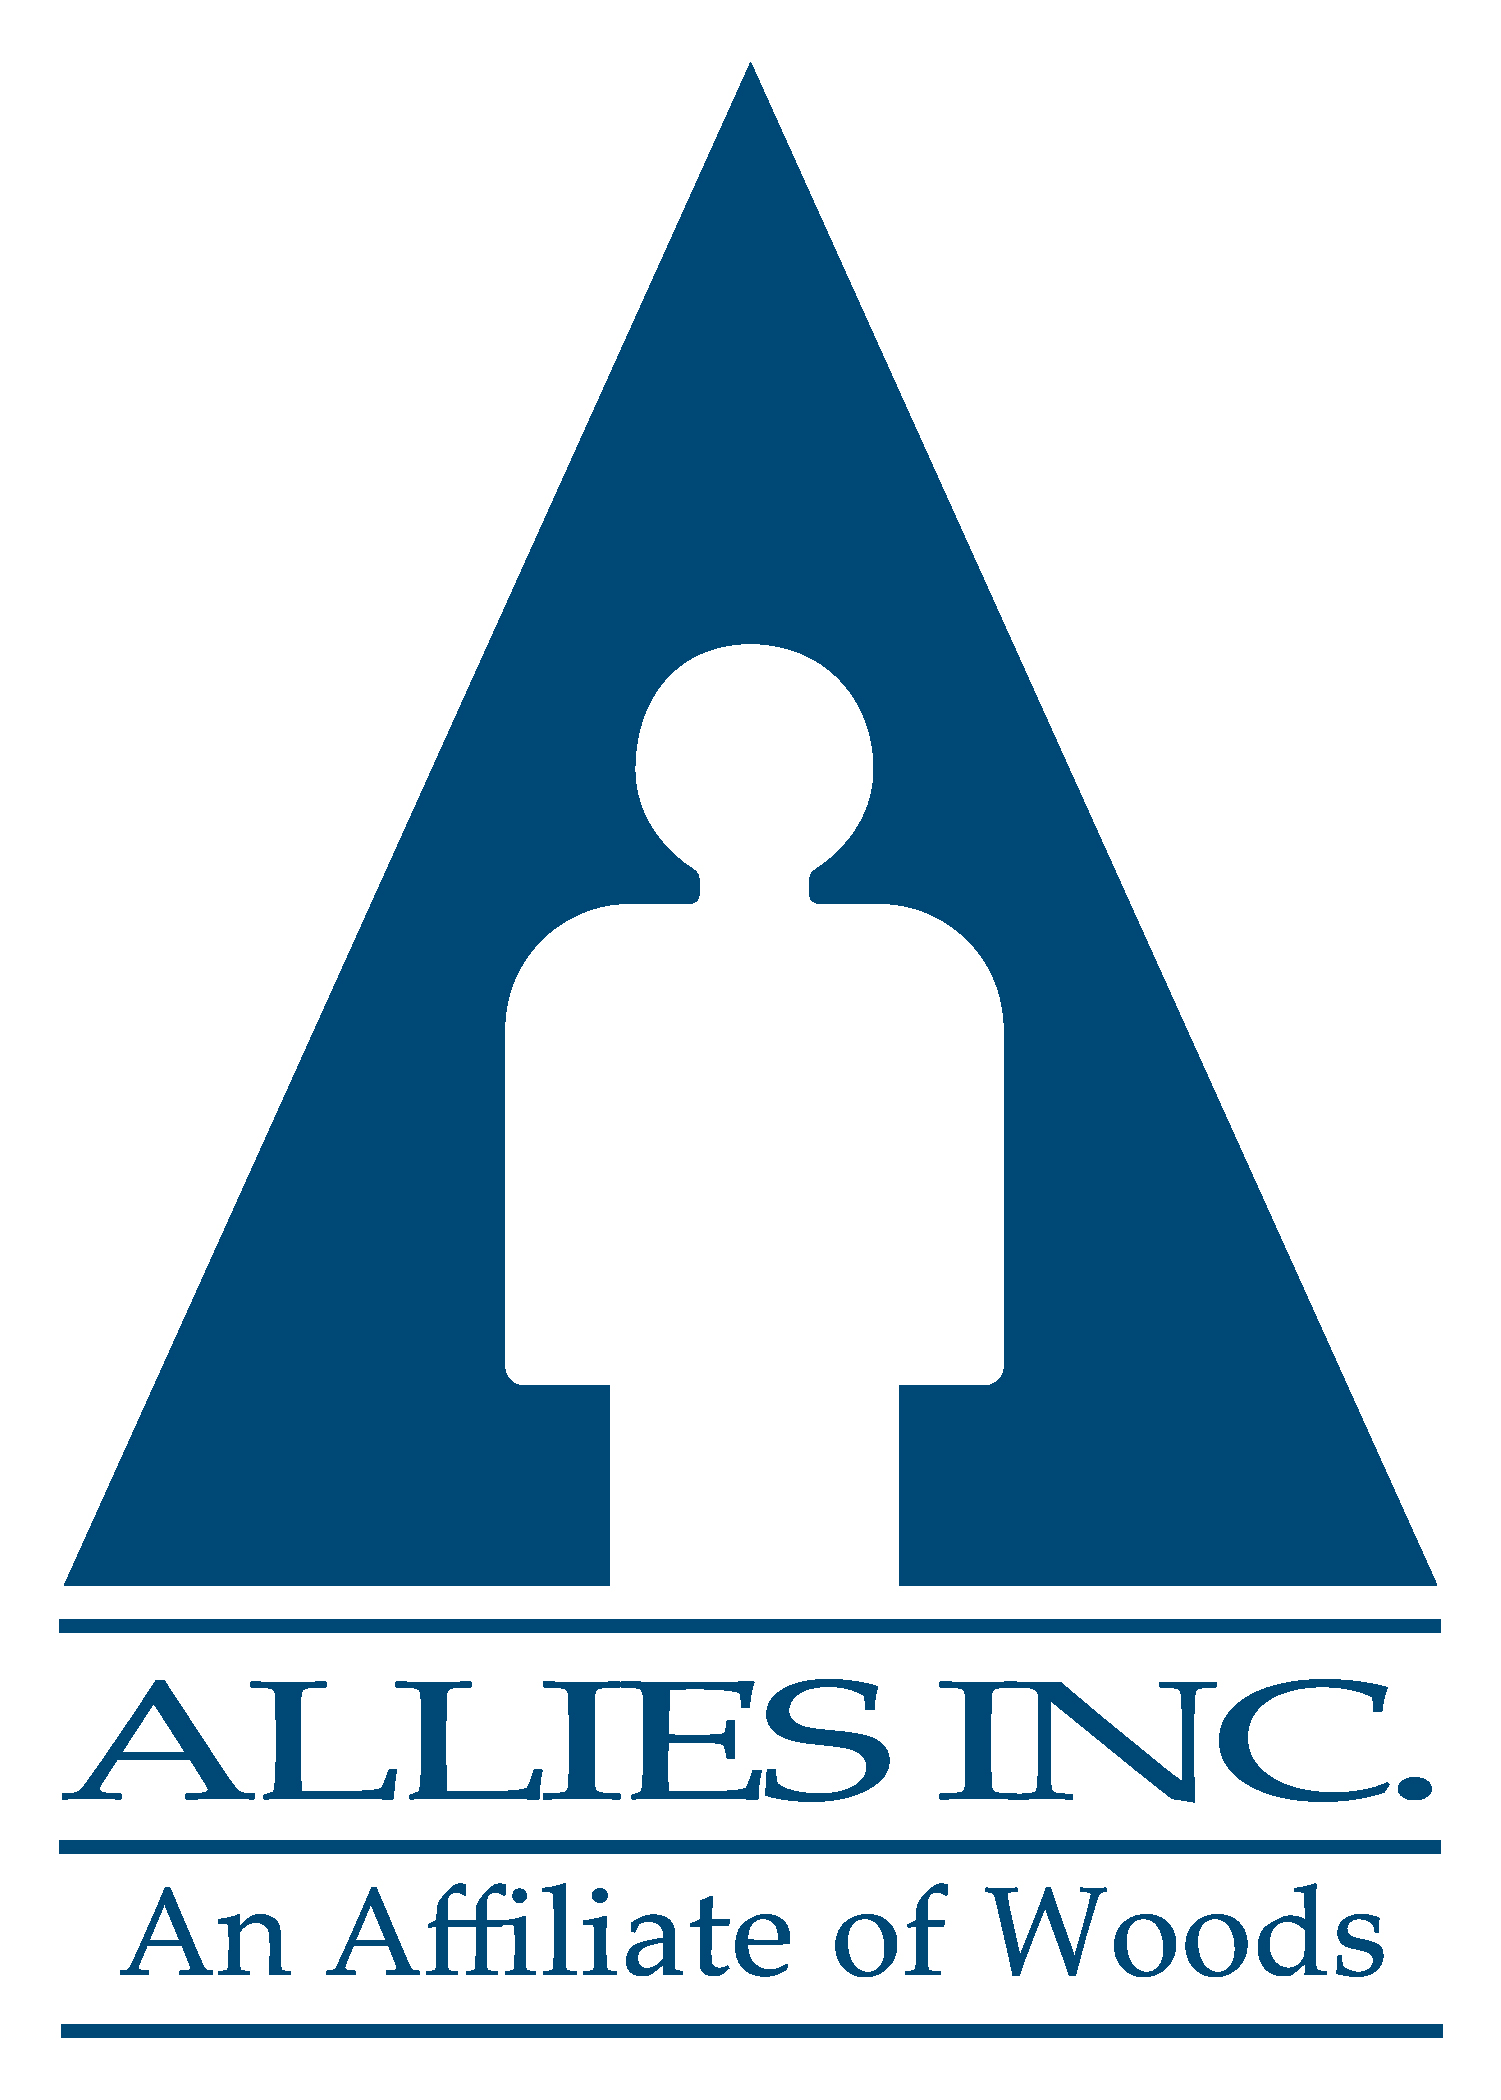 Allies Inc.